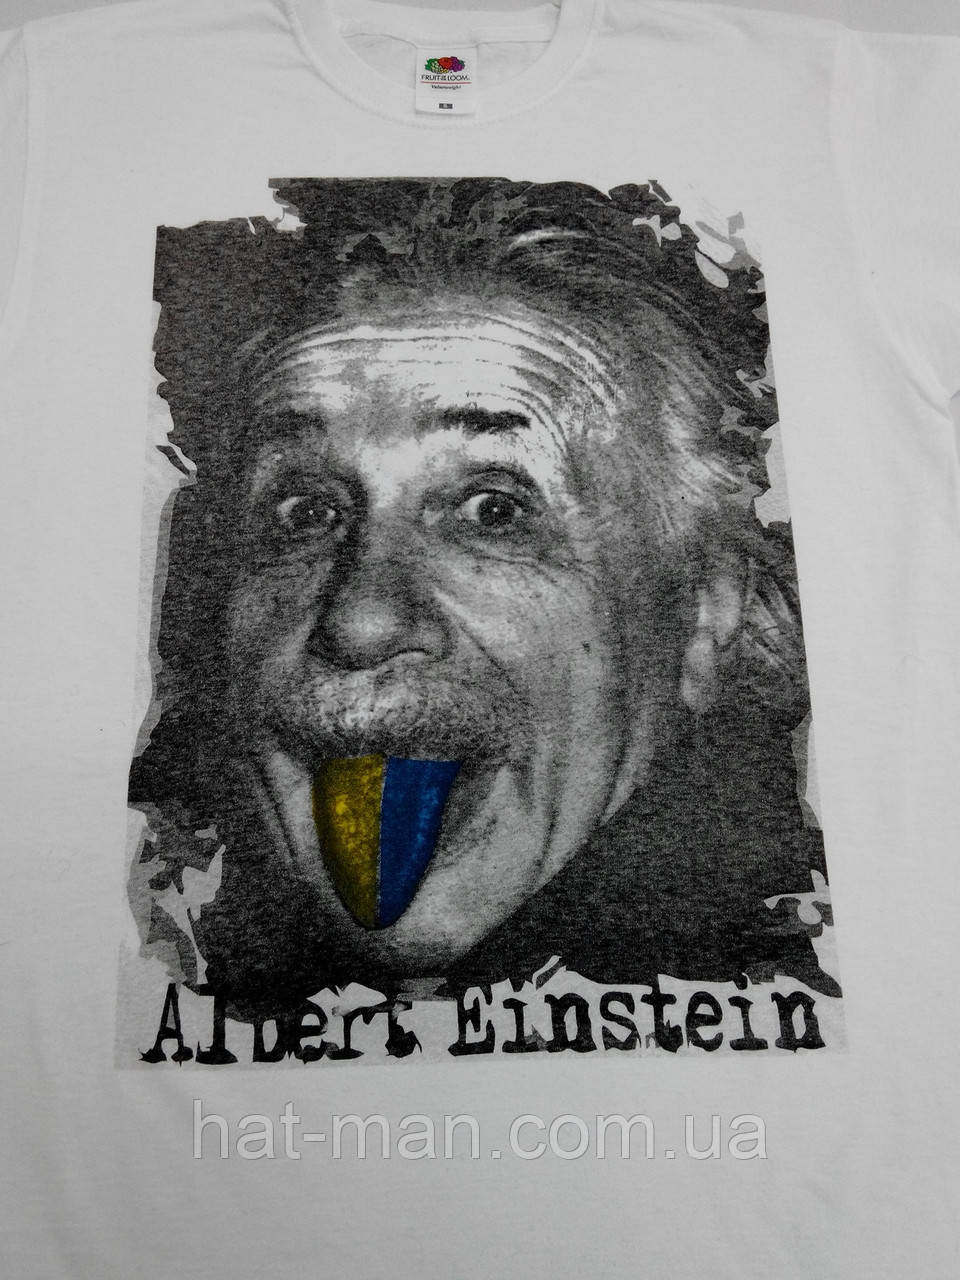 Футболка патріотична, прикольна, з Ейнштейном